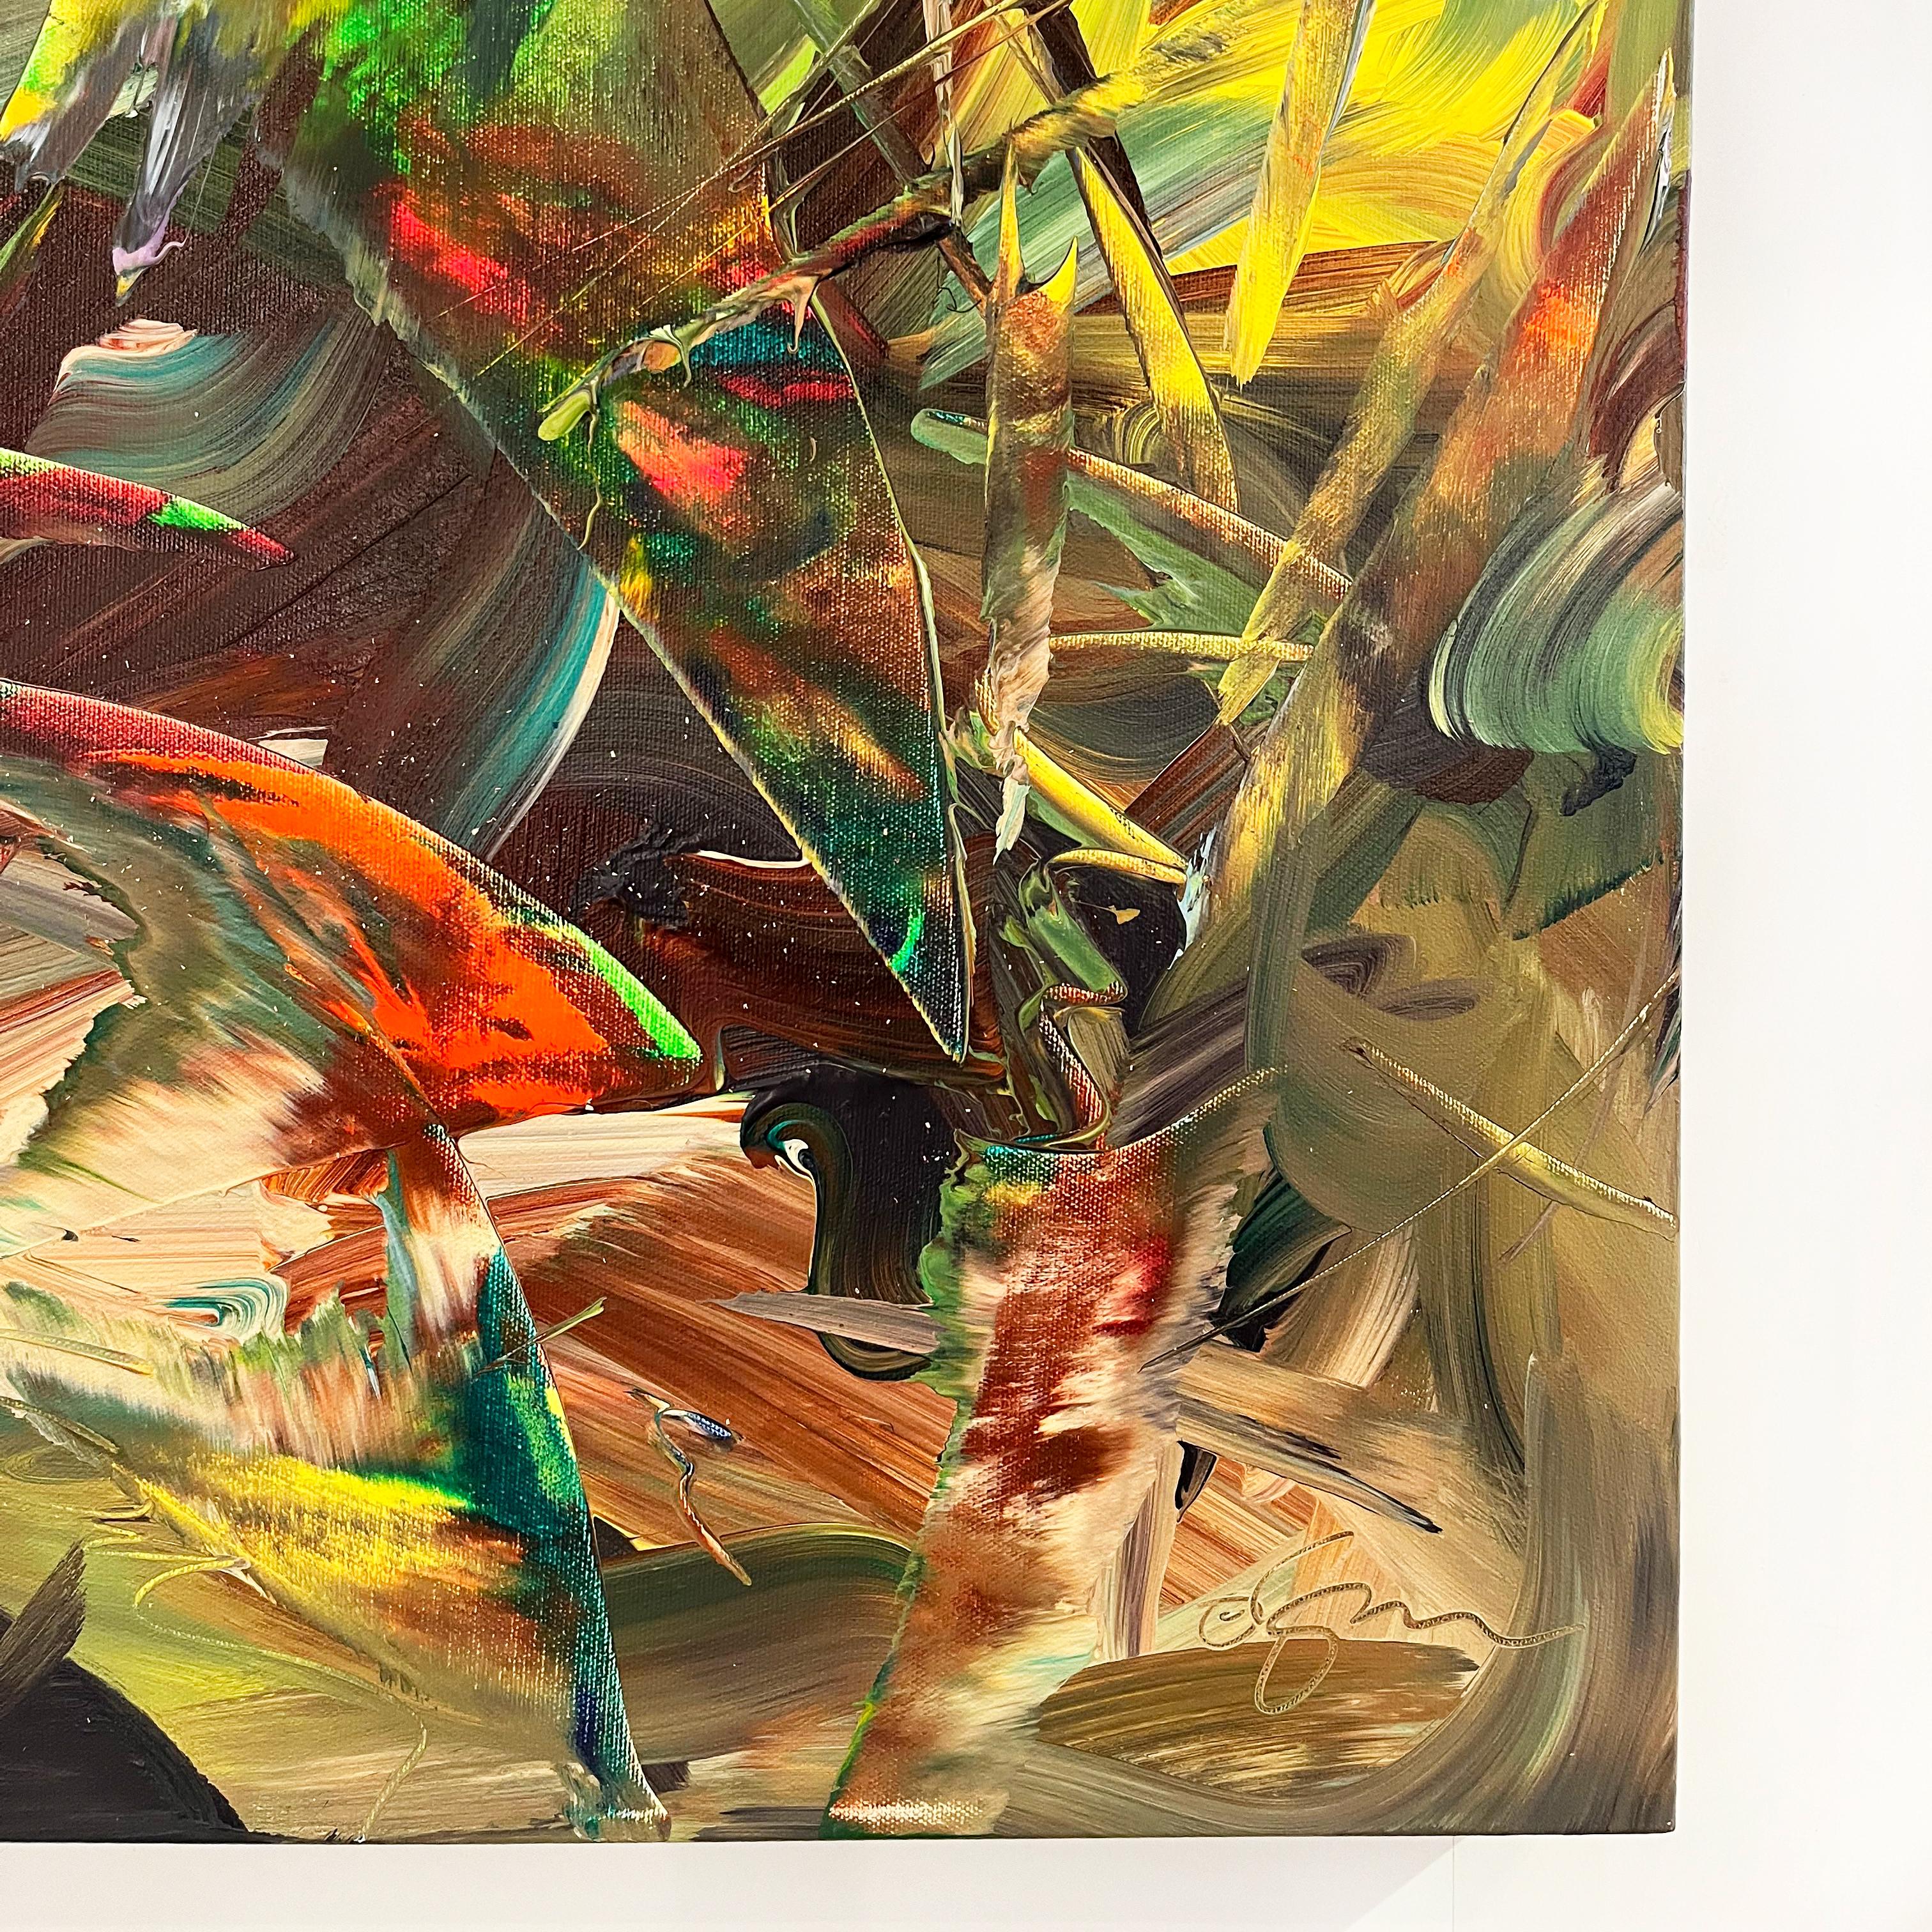 Joel Masewichs vielschichtige, imaginär-abstrakte Werke stellen seine emotionale Reaktion auf Landschaften dar, wobei viele seiner Werke visuelle Bezüge zu Wasser oder Licht enthalten. Die lebhaften Farbtöne sind so kontrastreich, als würden sie von